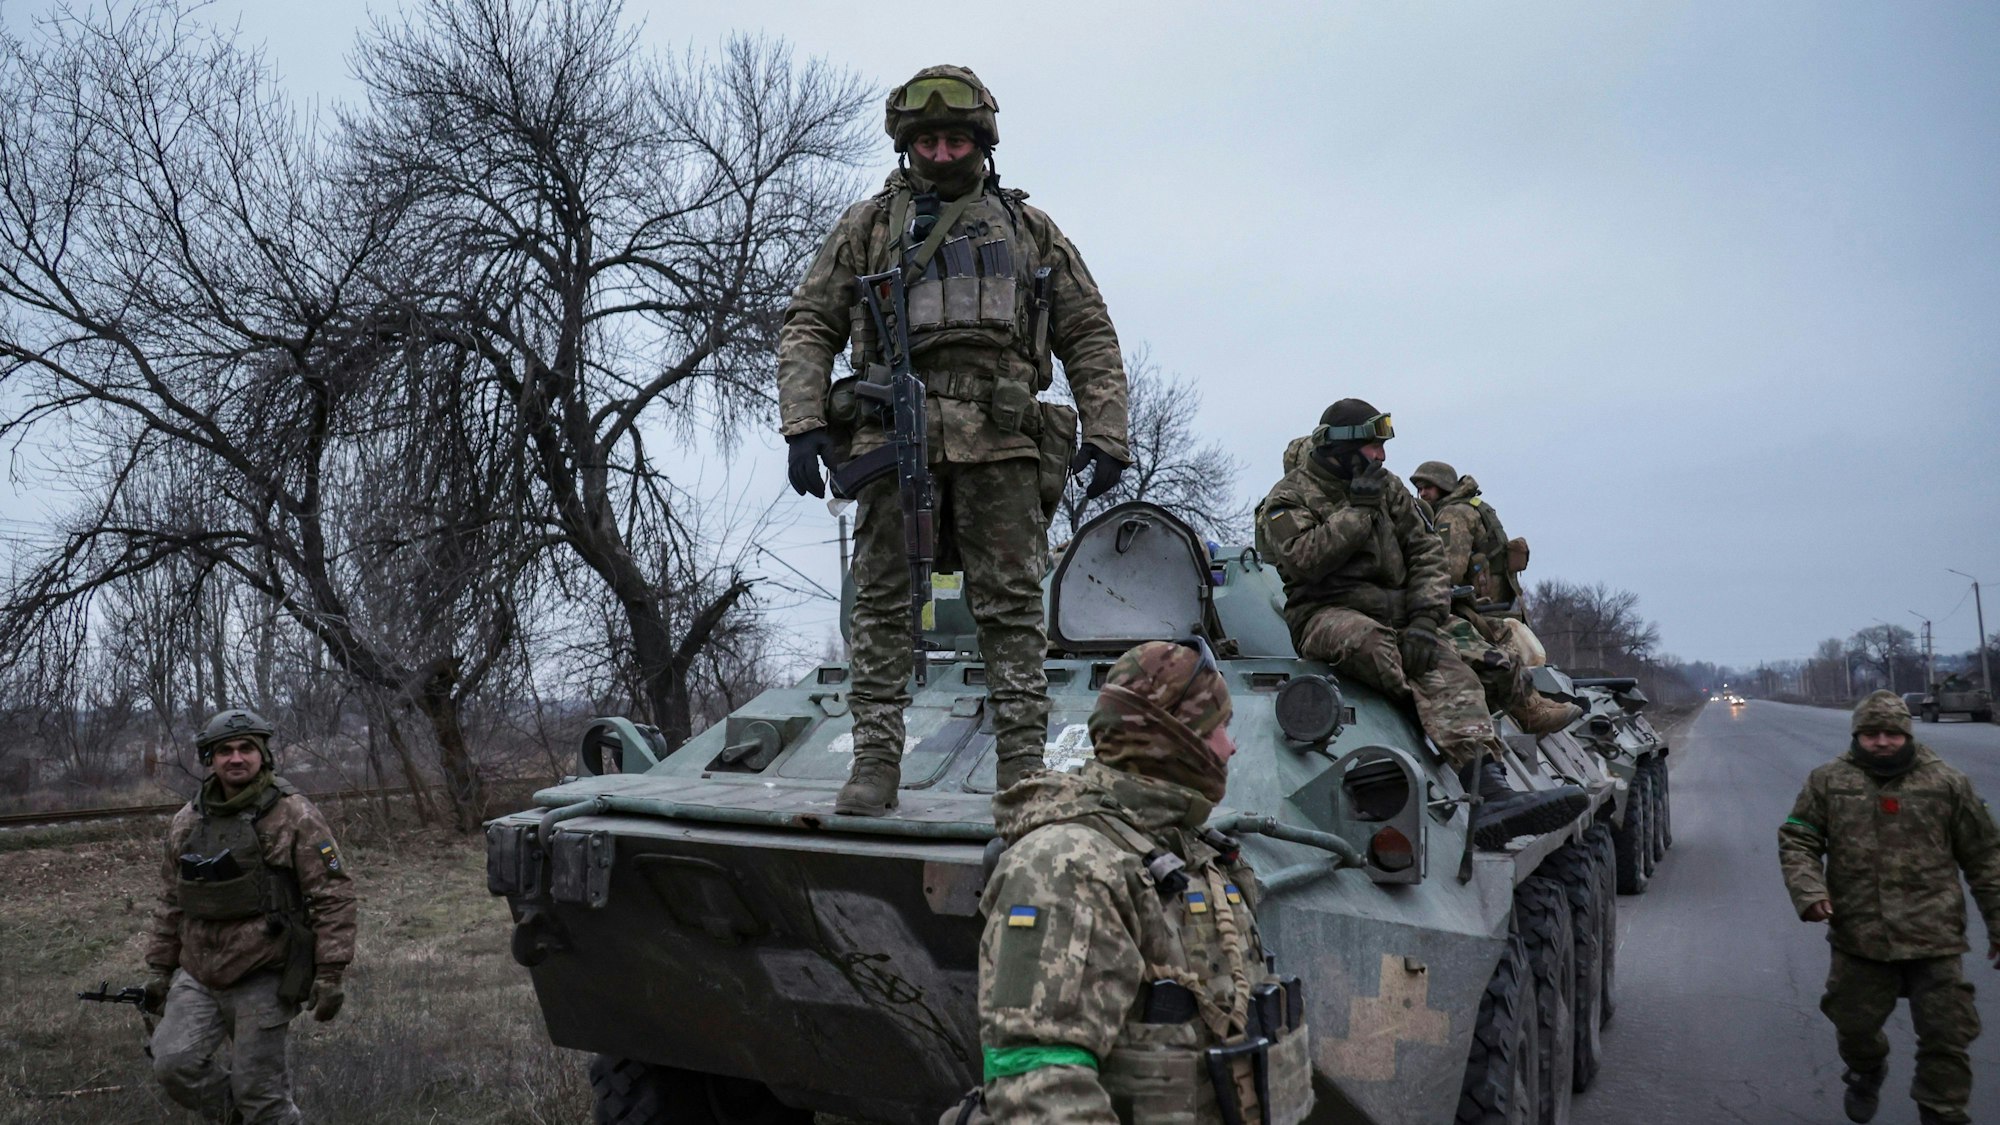 Ukrainische Soldaten umringen einen Panzer kurz vor der Frontlinie in der Region Donez.